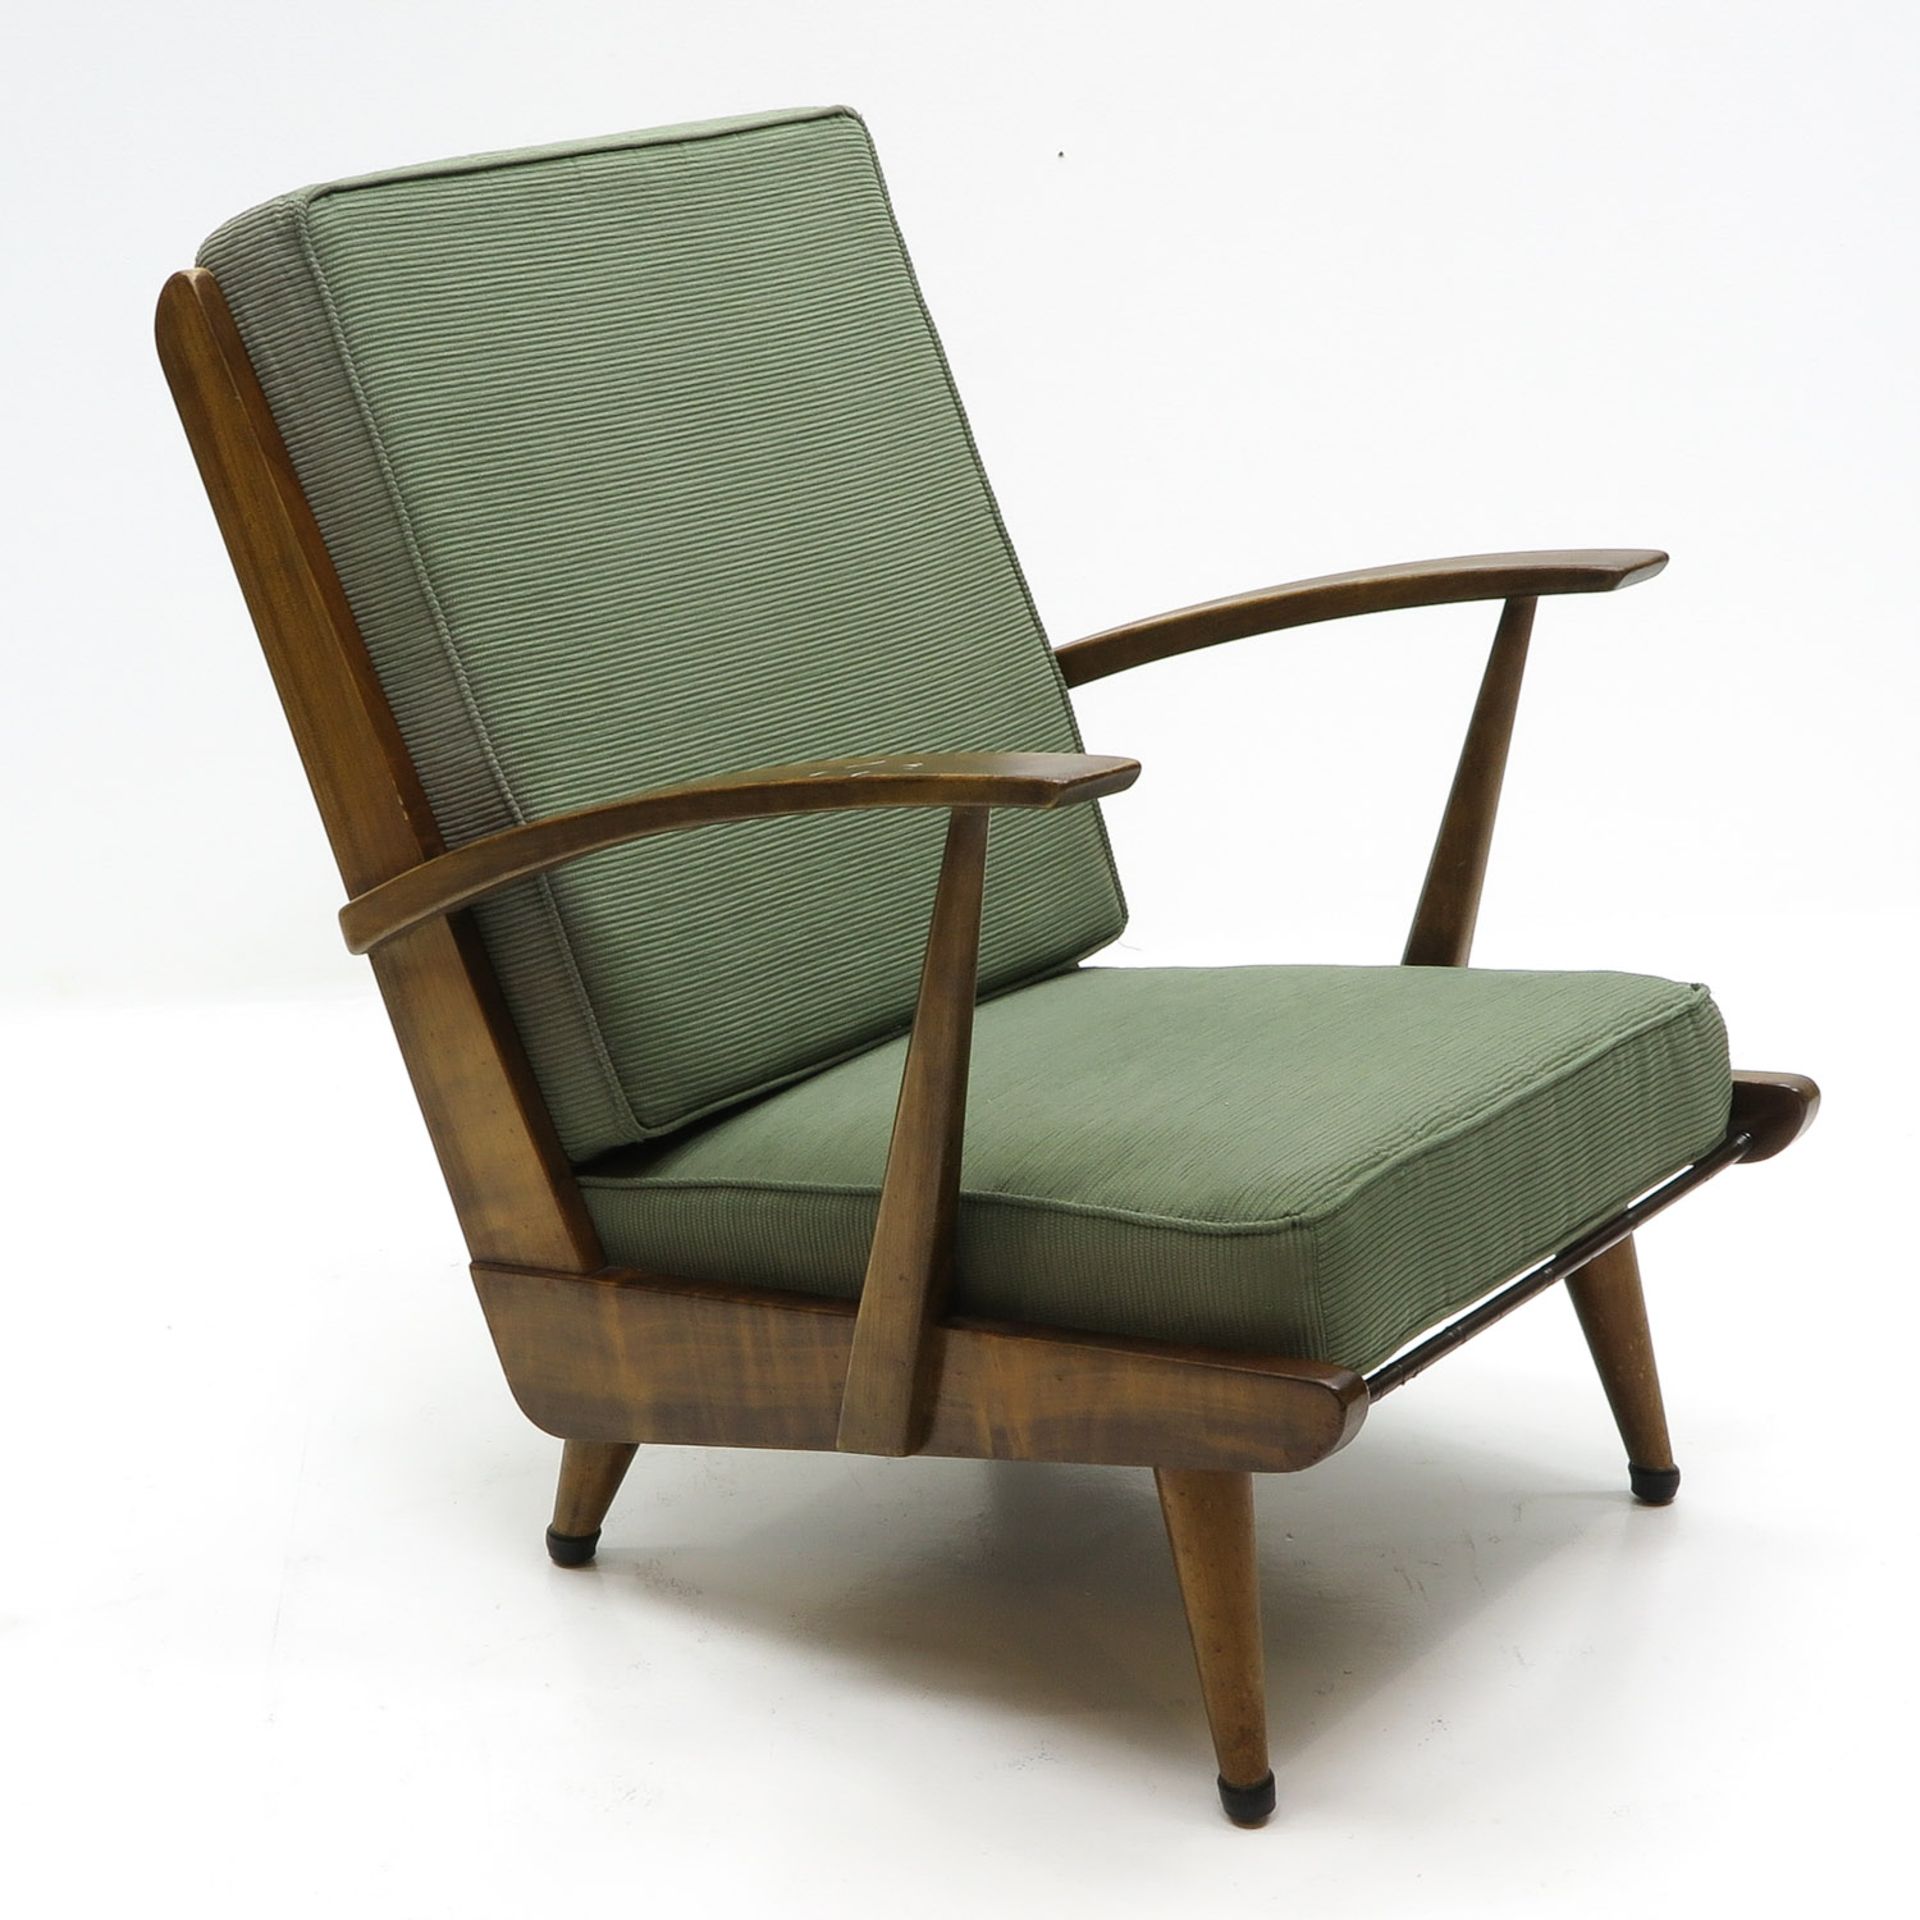 A Collection of Mid Century Modern Furniture - Bild 4 aus 5